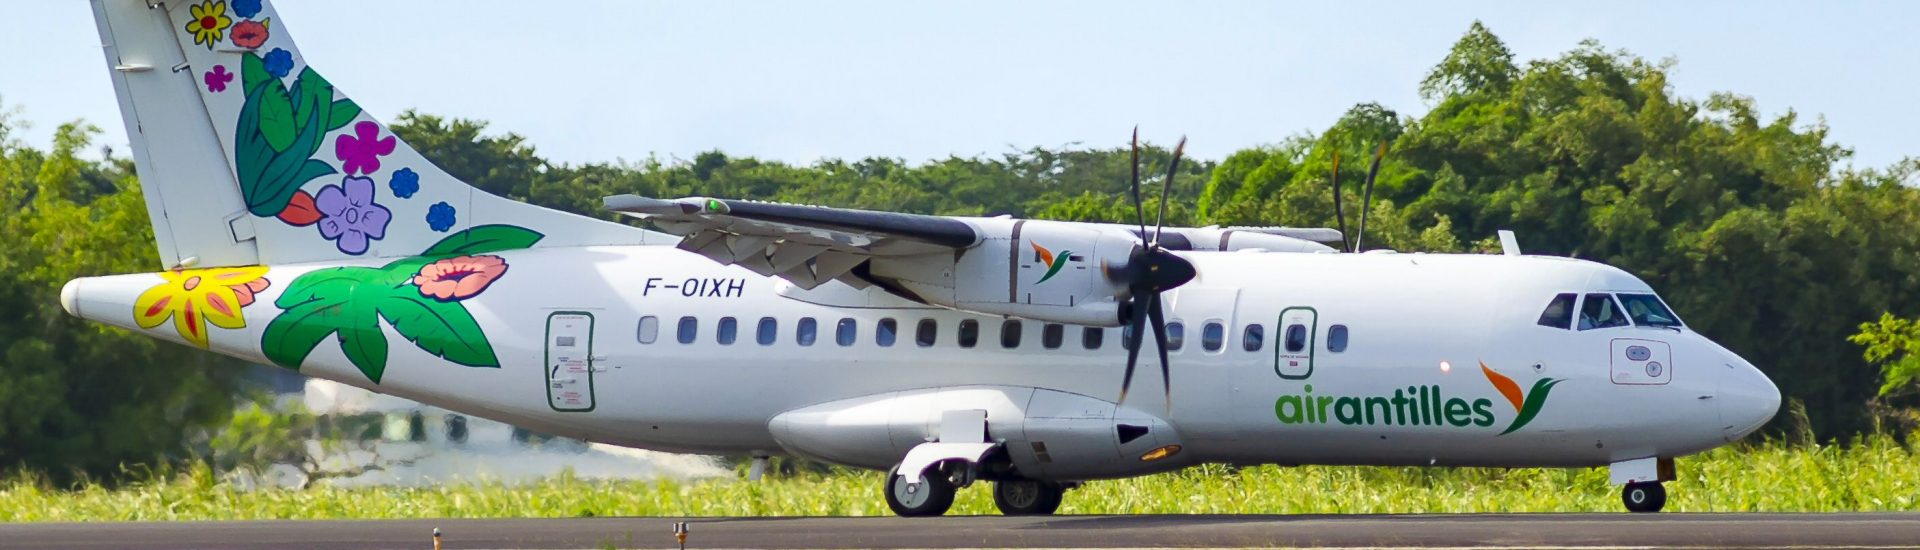 ATR42-500 Air Antilles F-OIXH